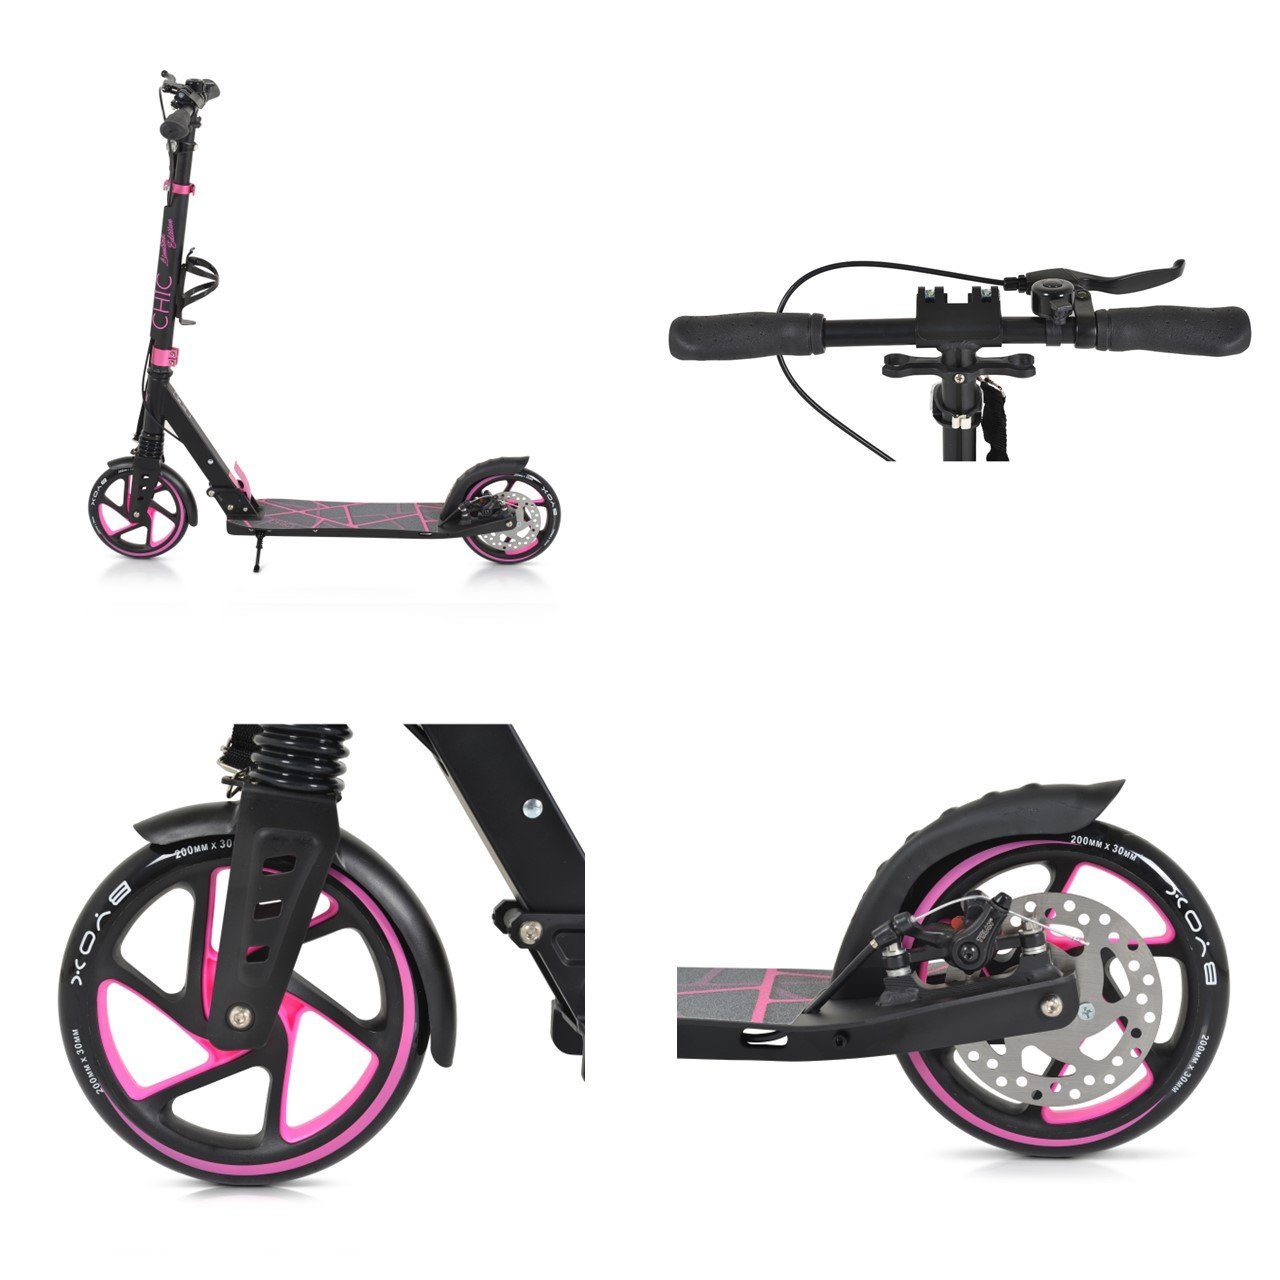 Seitenständer, PU-Räder, LED-Licht, Lager, Byox Kinderroller pink ABEC-7 Chic faltbar Cityroller